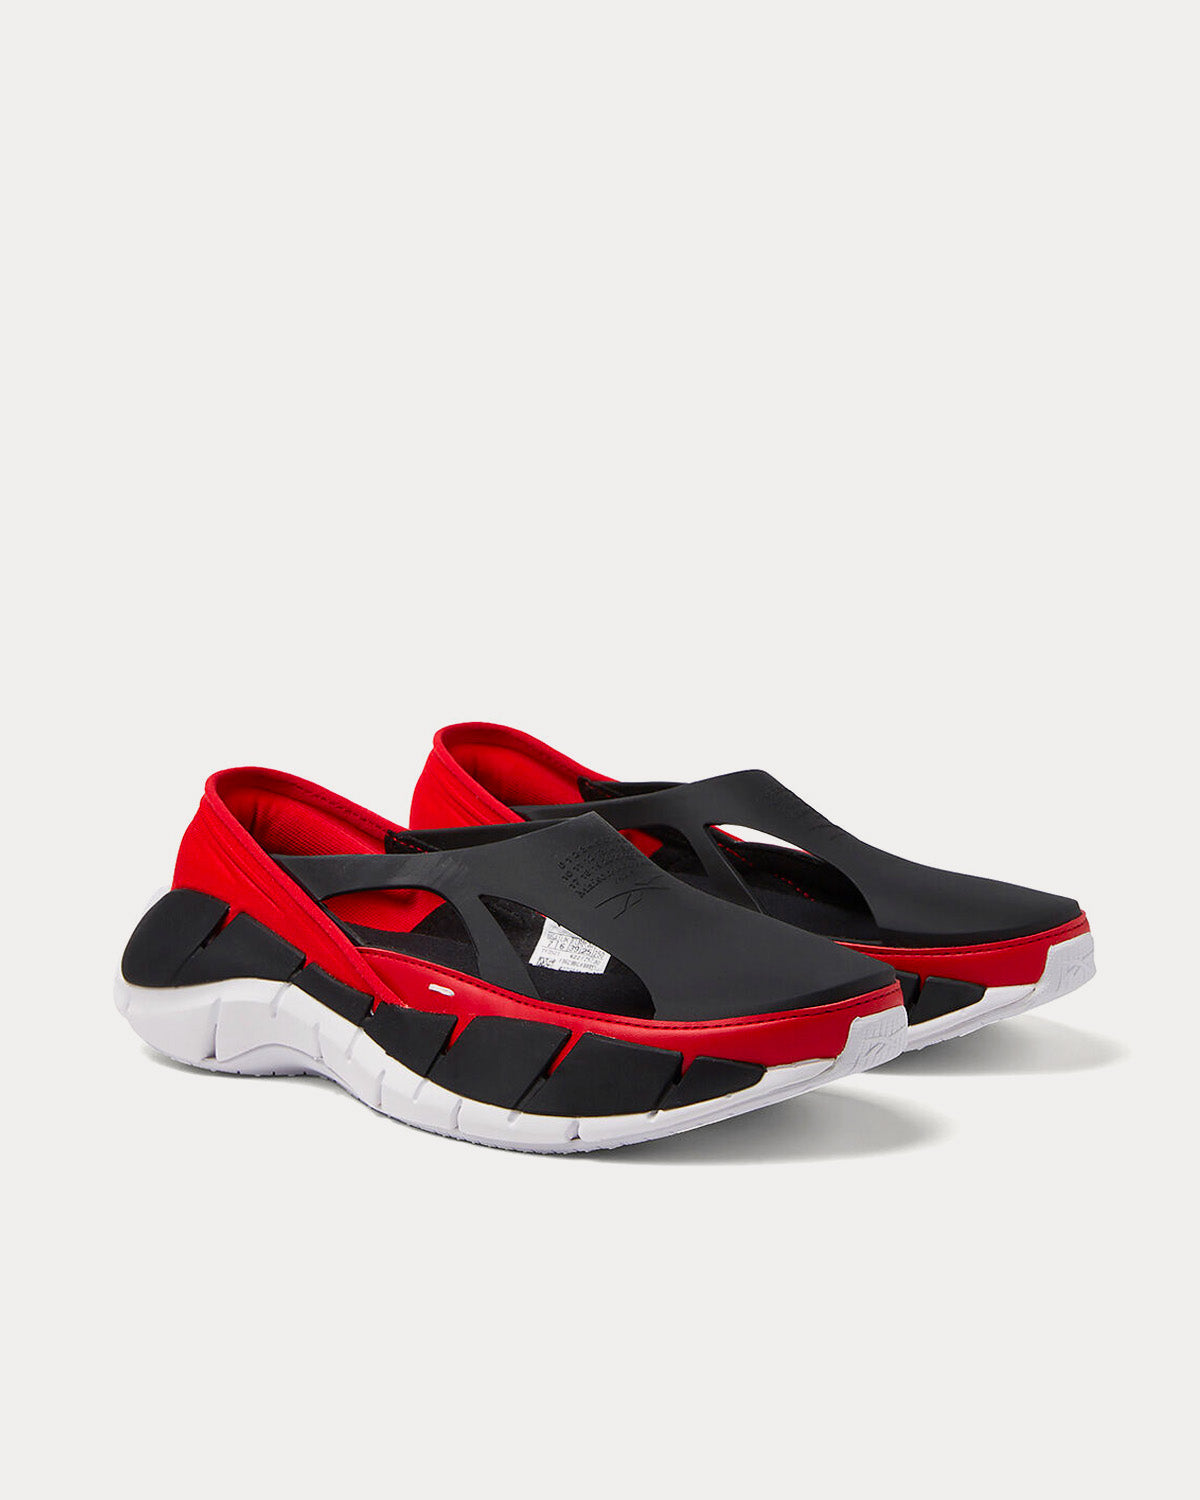 Reebok X Maison Margiela - Tier 1 Croafer Black / Red Slip On Sneakers